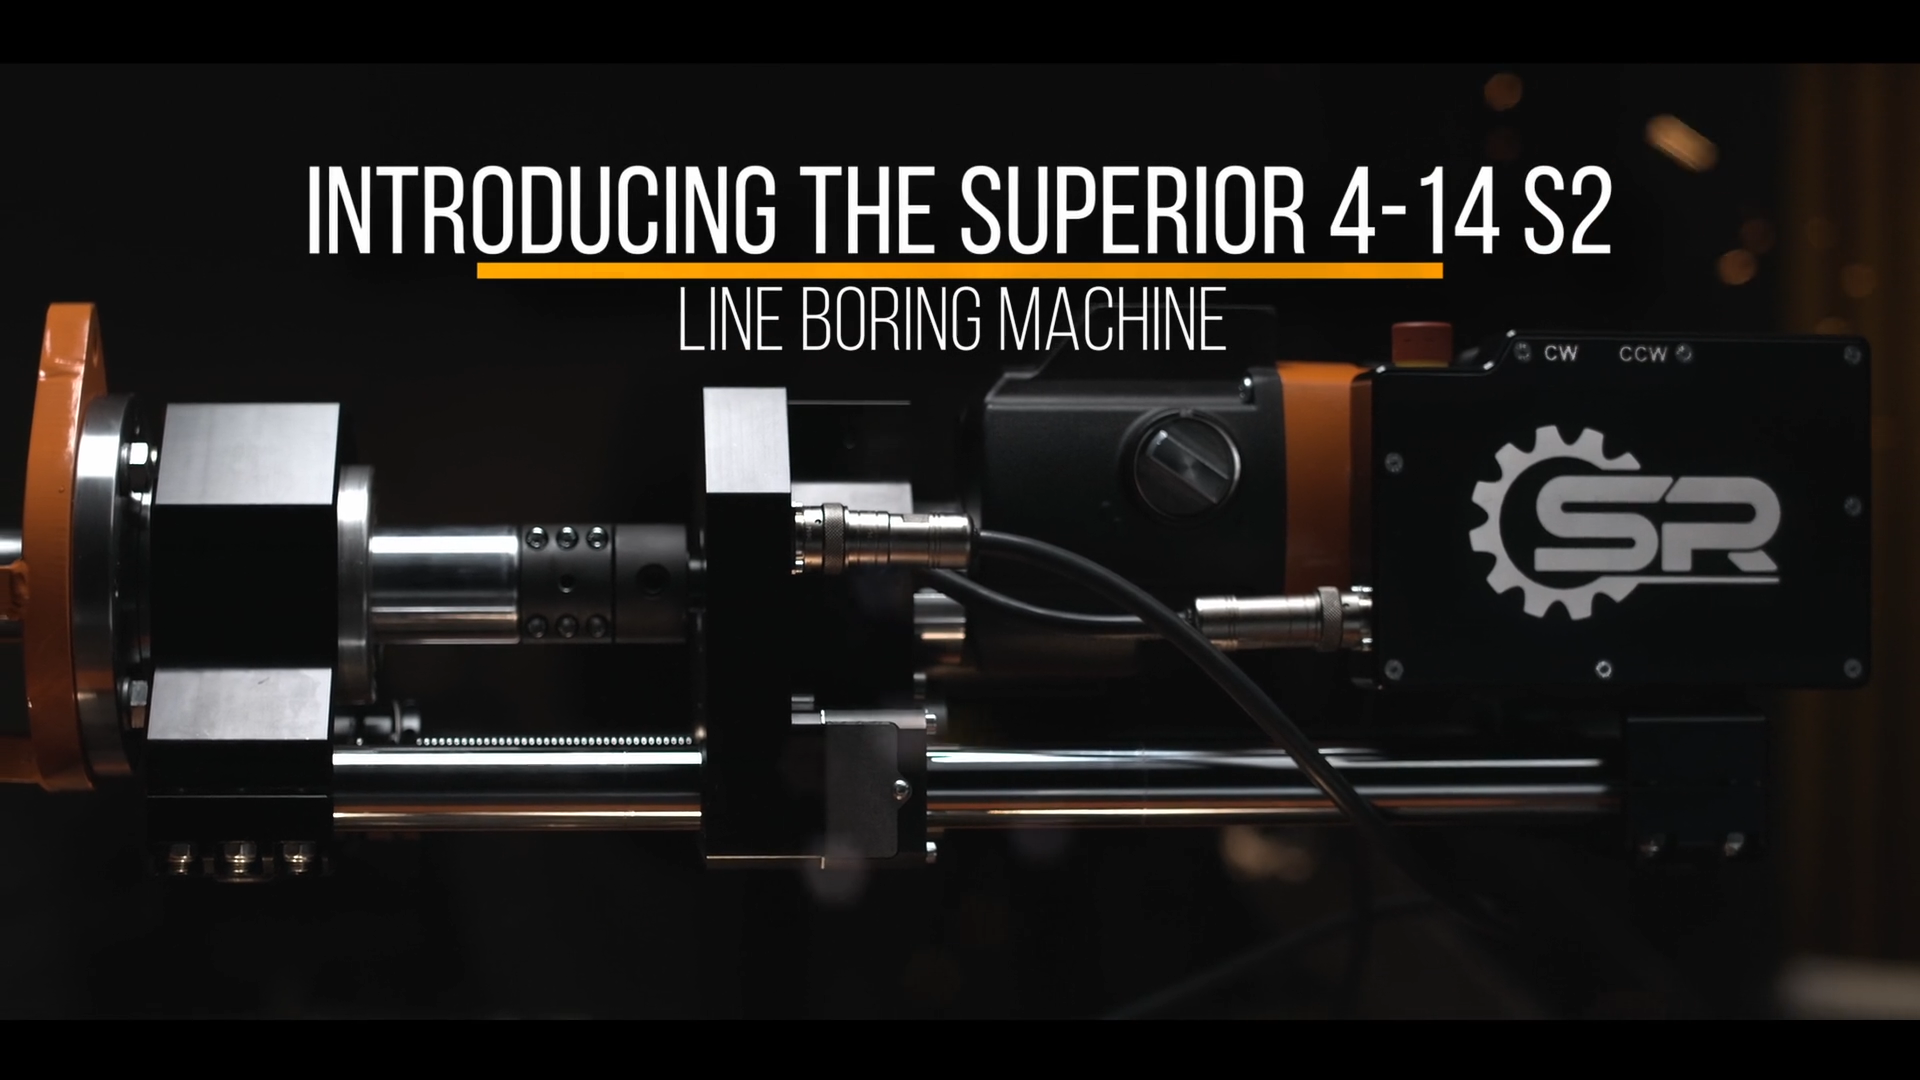 The Superior 4-14 S2 Line Boring Machine